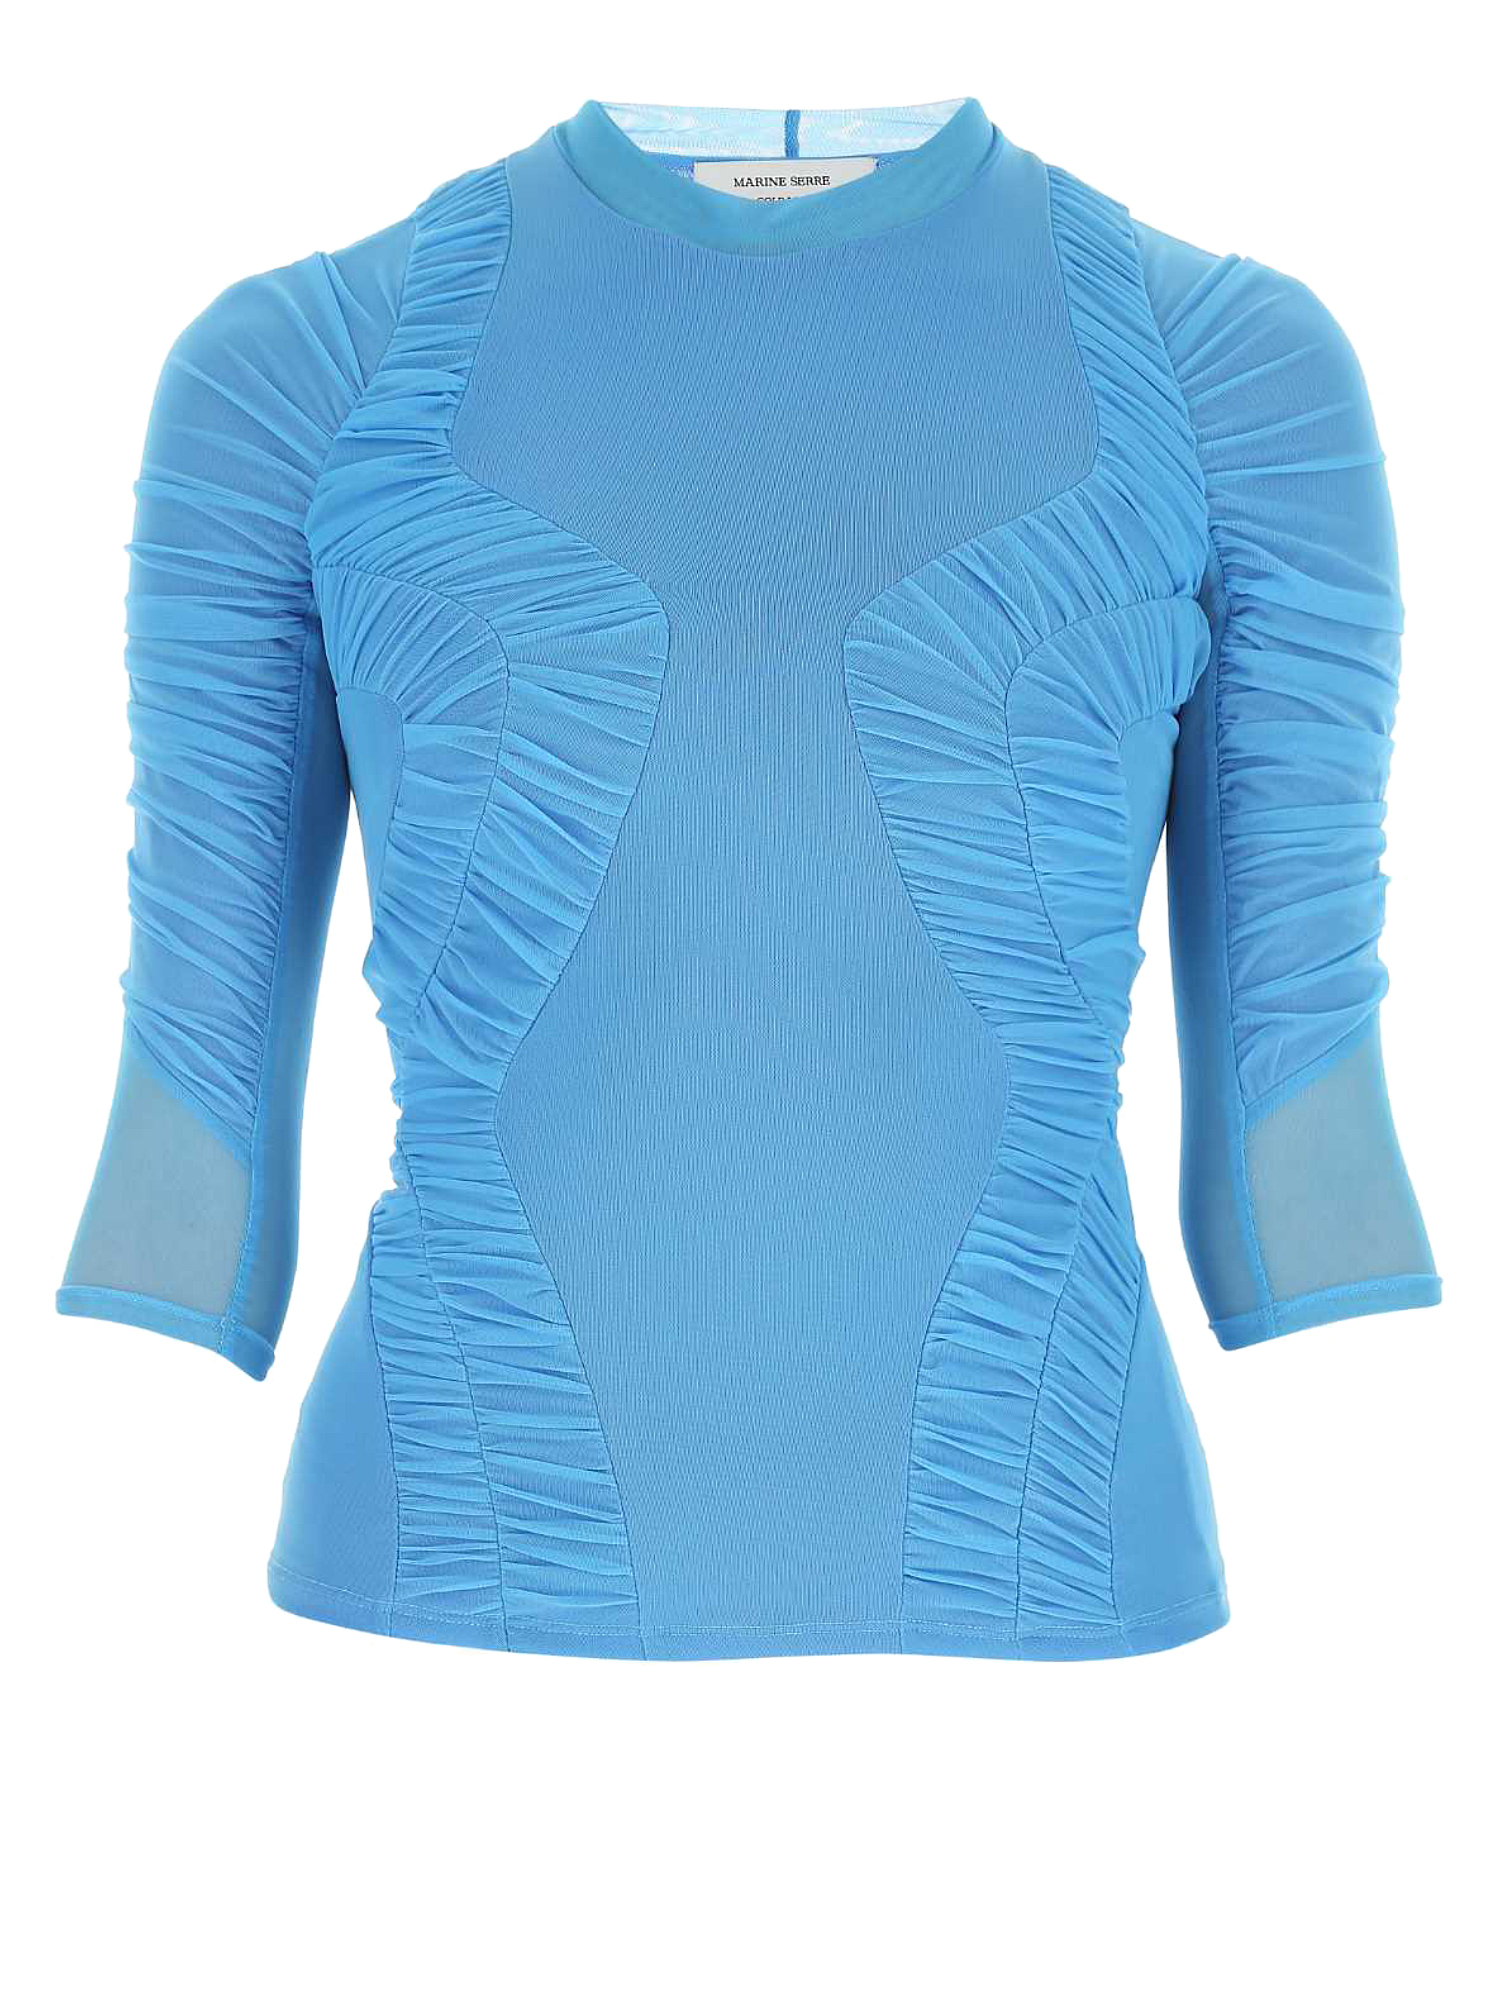 T-shirts Et Tops Pour Femme - Marine Serre - En Synthetic Fibers Blue - Taille:  -